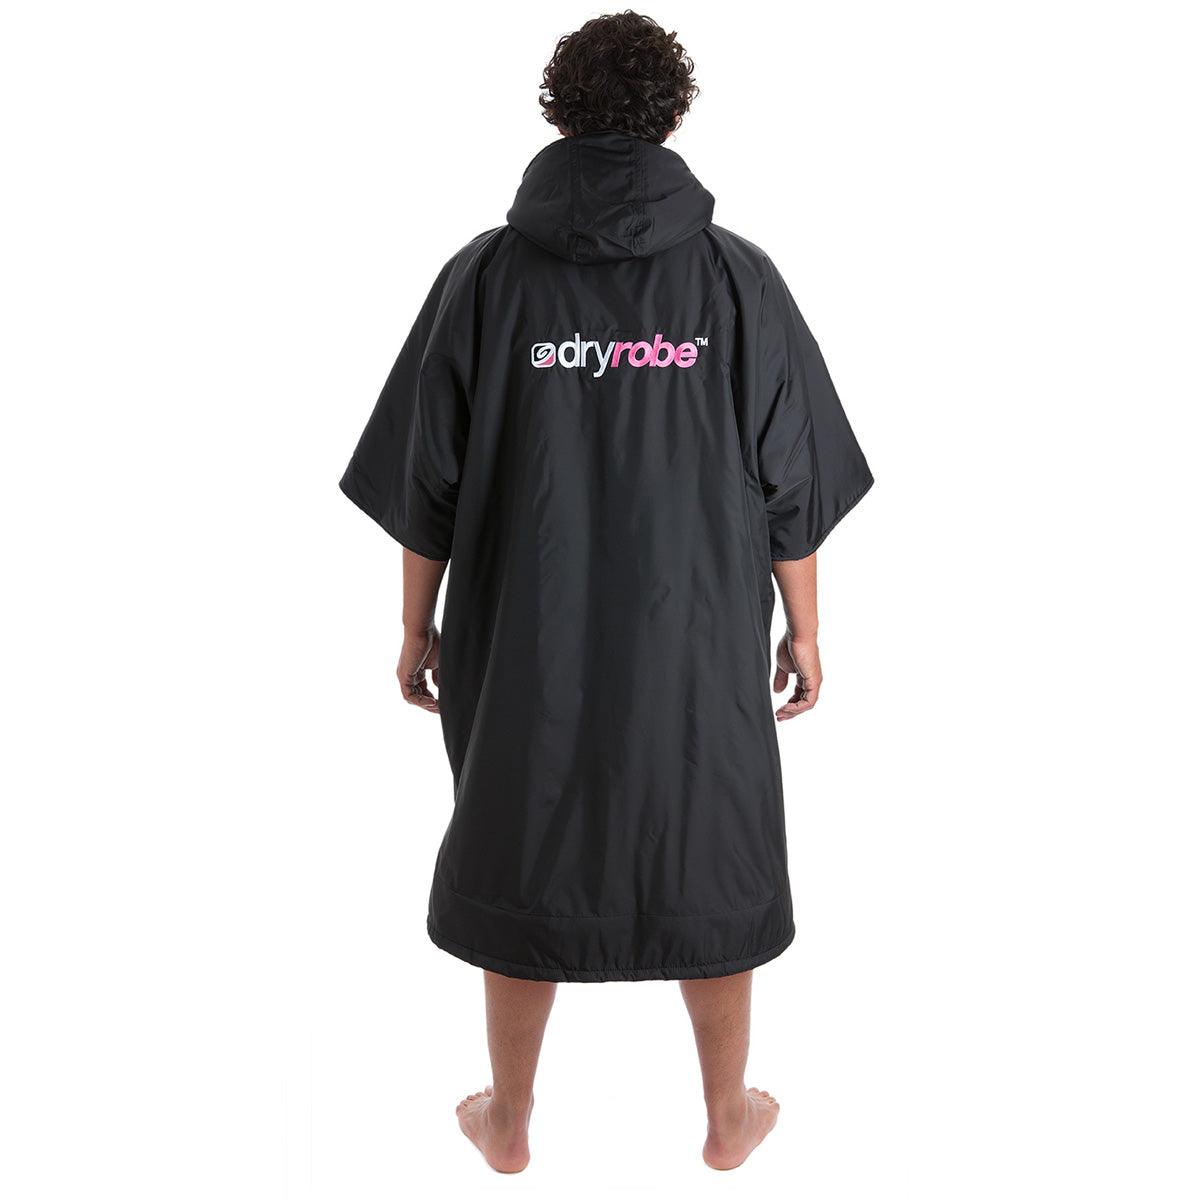 Dryrobe Advance Short Sleeve - Kiteshop.com